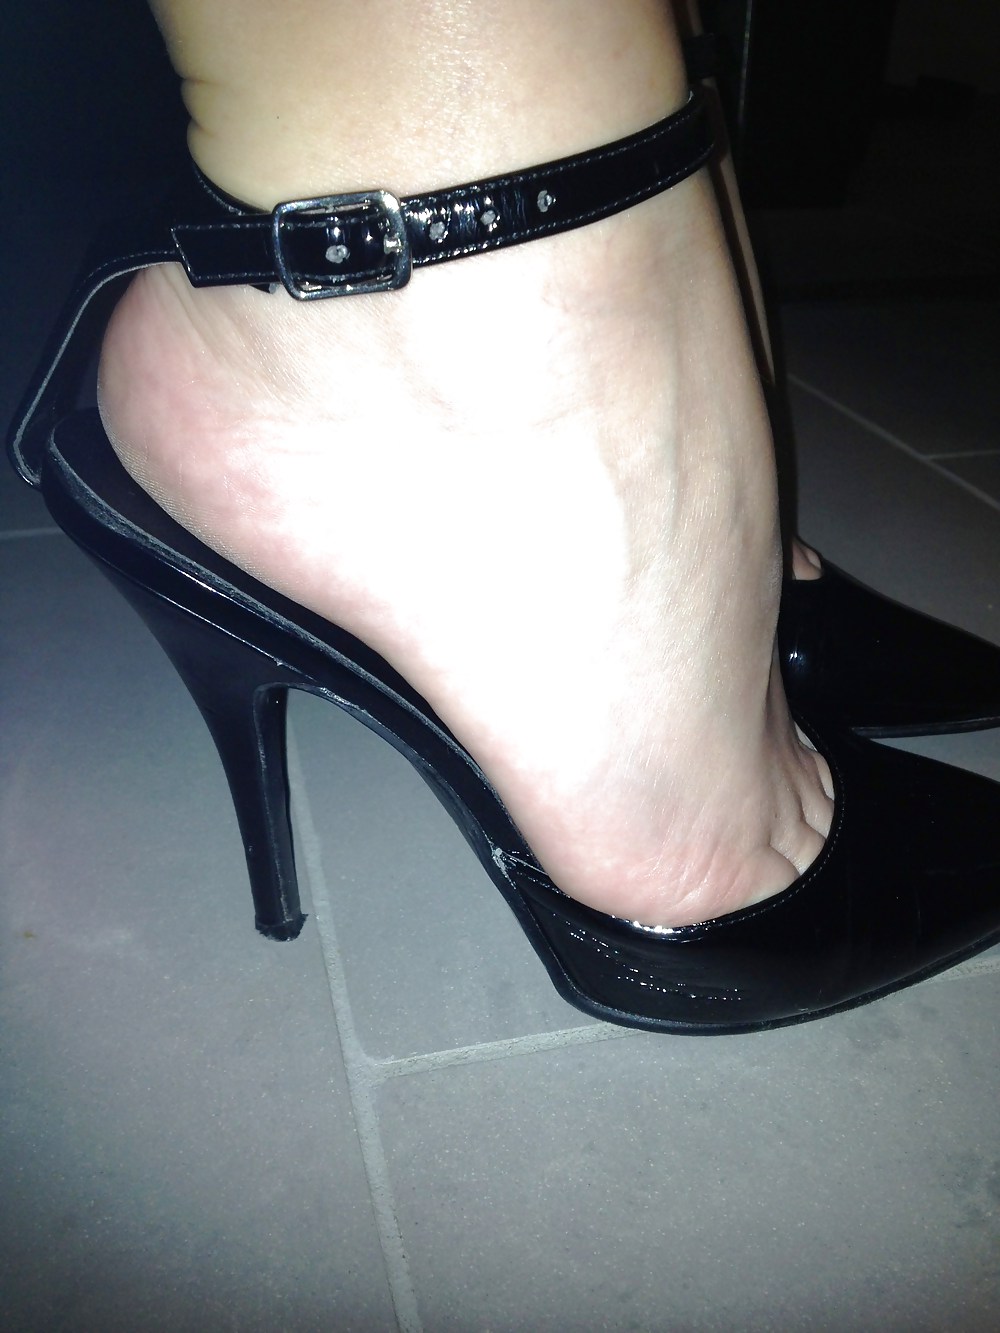 Wife's feet 2 #22261936